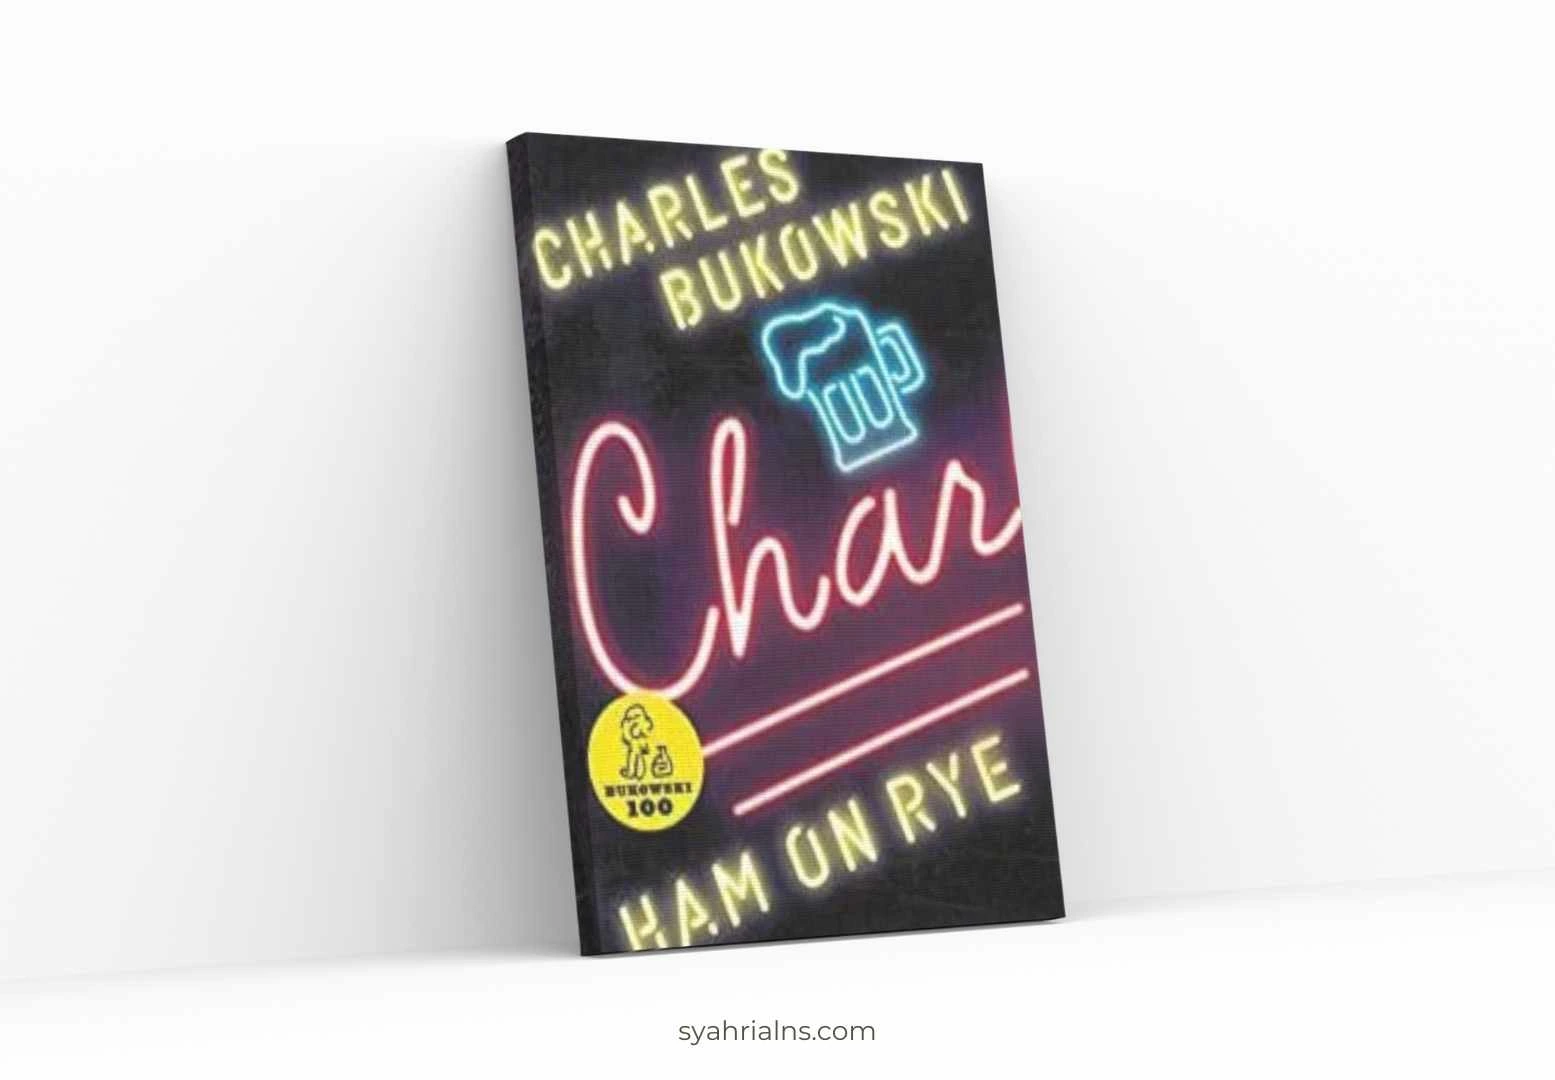 Ham on Rye by Charles Bukowski